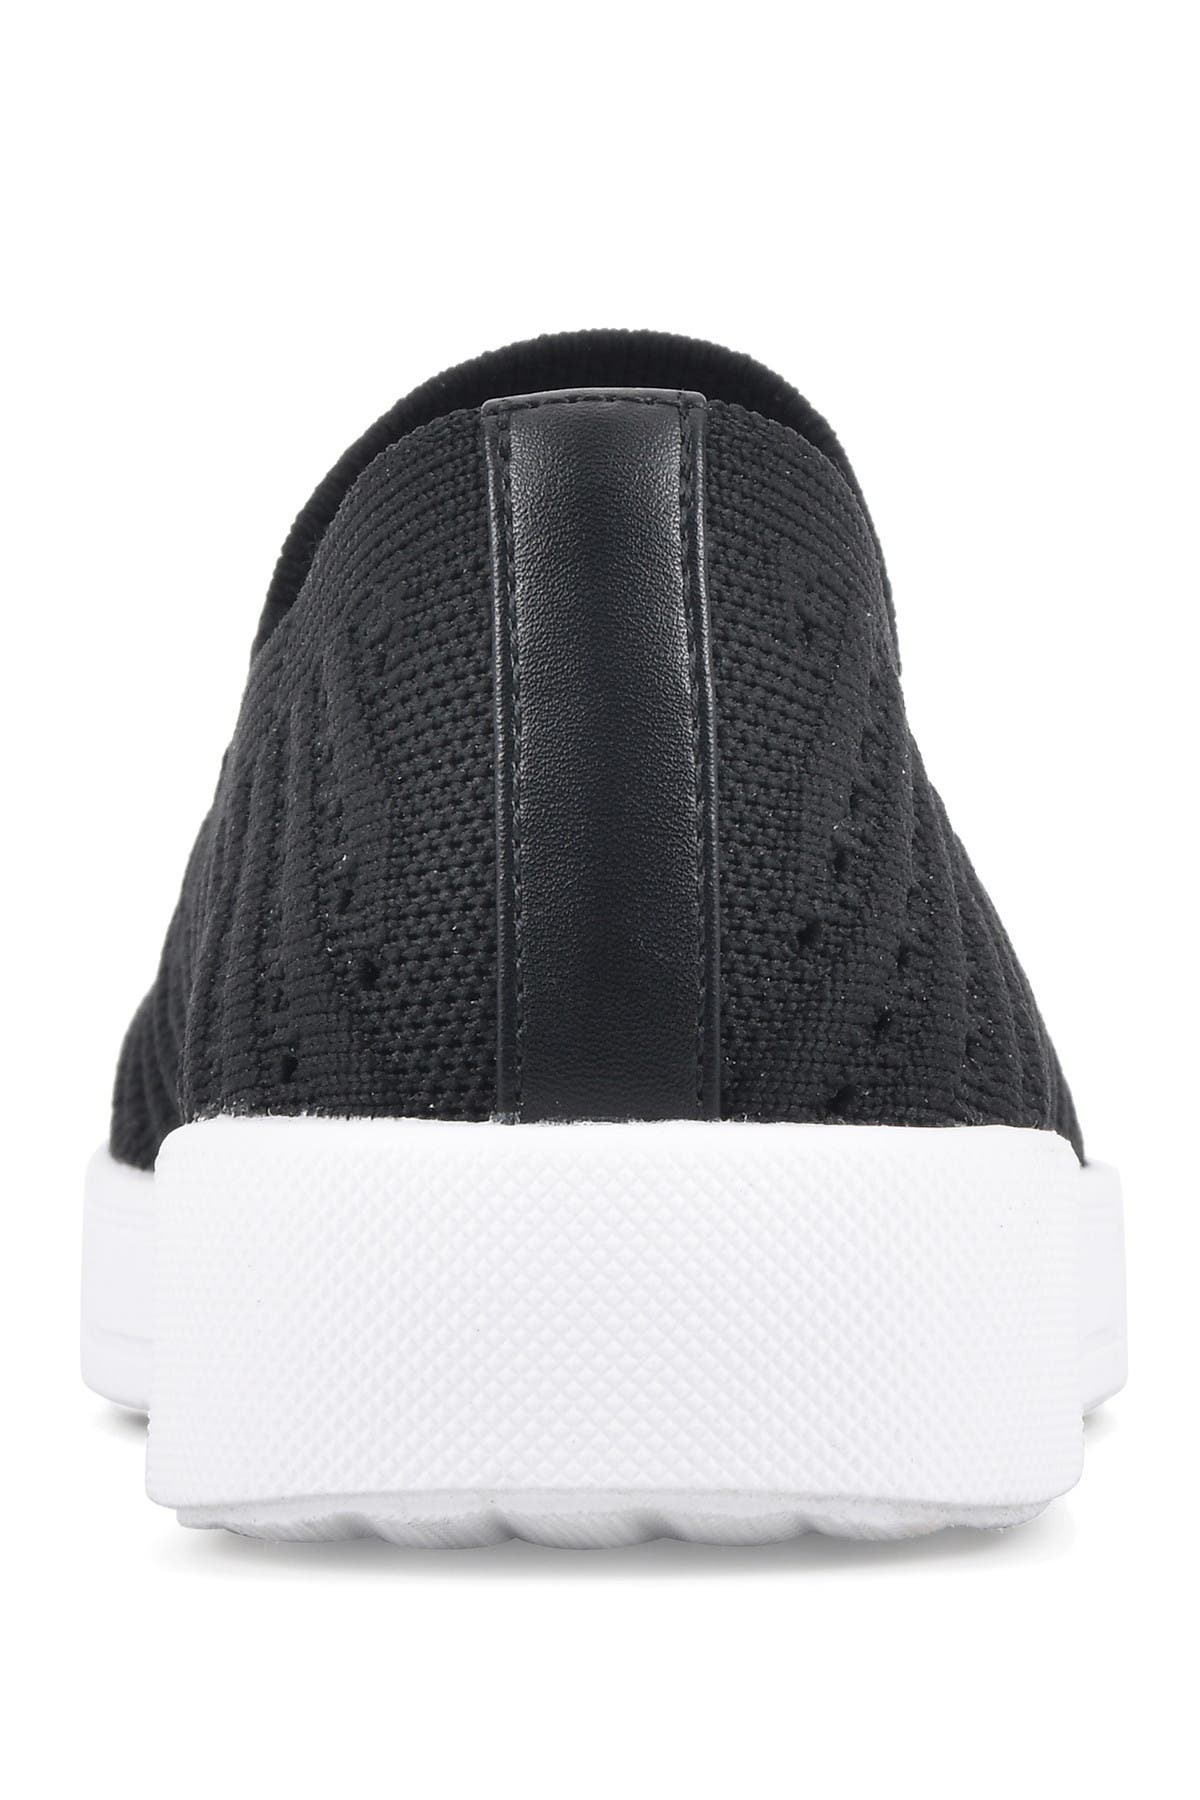 White Mountain Footwear Courage Slip-on Sneaker In Black